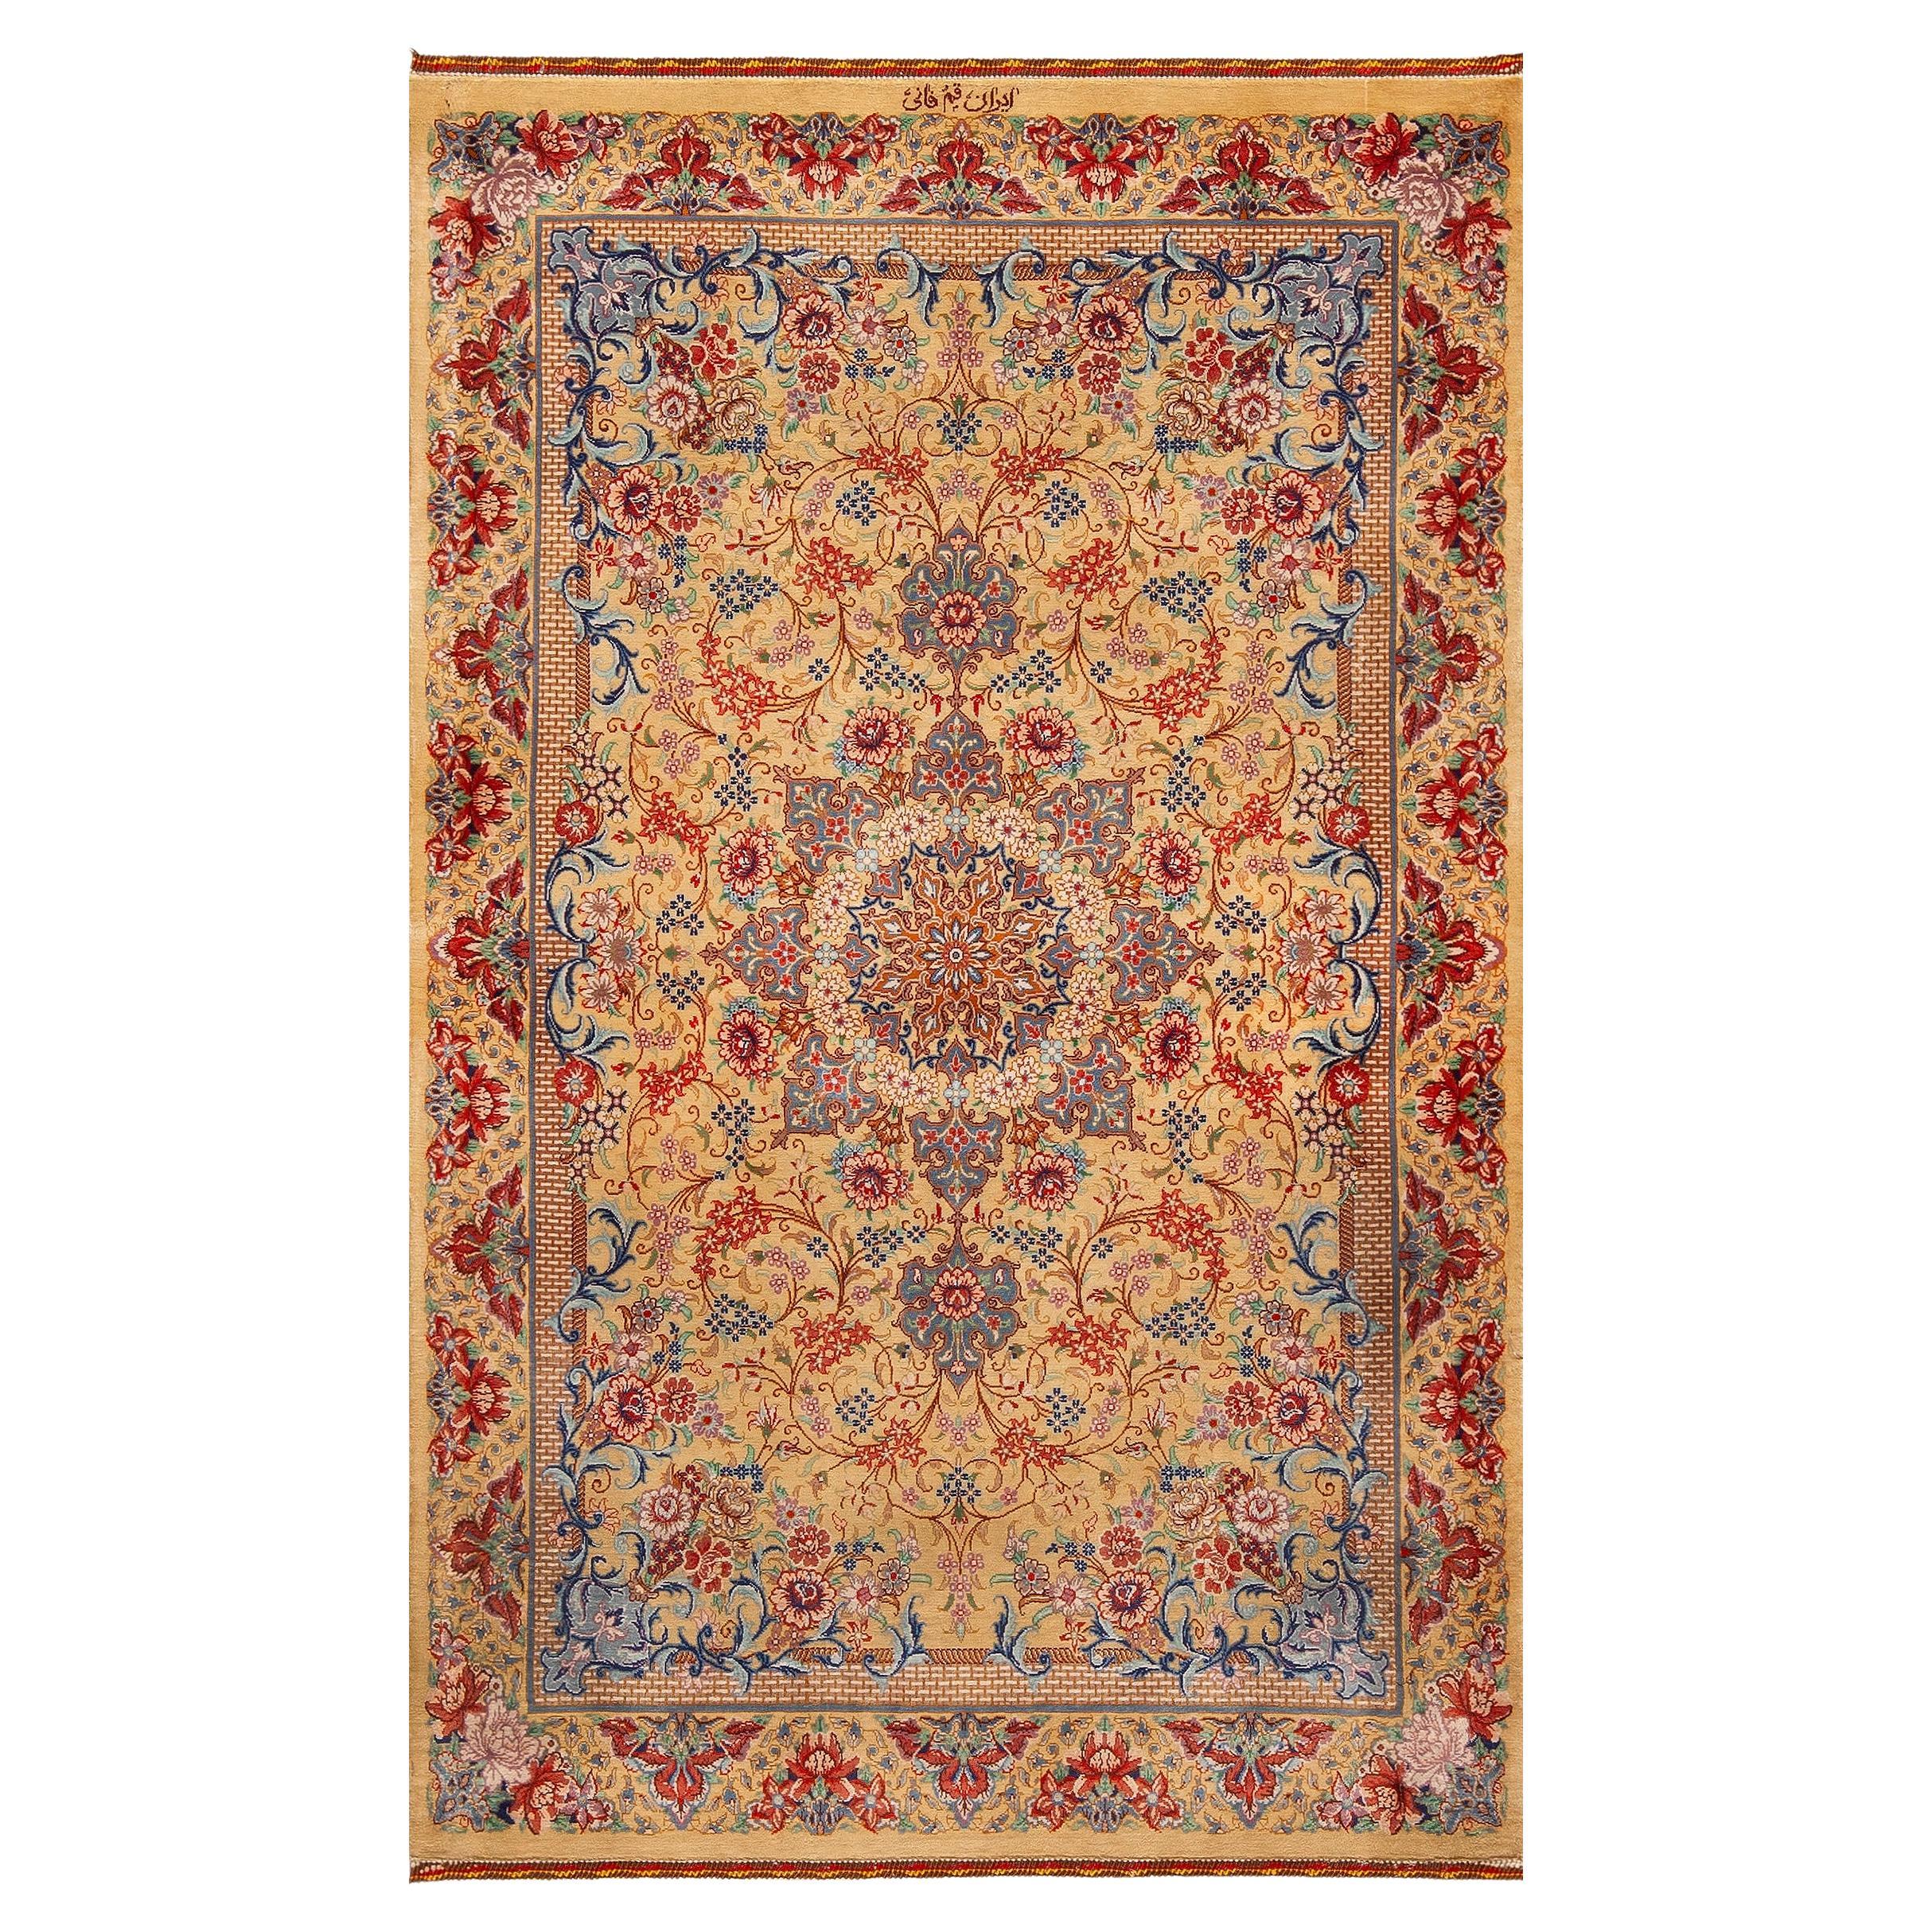 Luxuriöser persischer Qum-Teppich aus Seide mit Blumenmuster im künstlerischen Stil, 2'6" x 4'